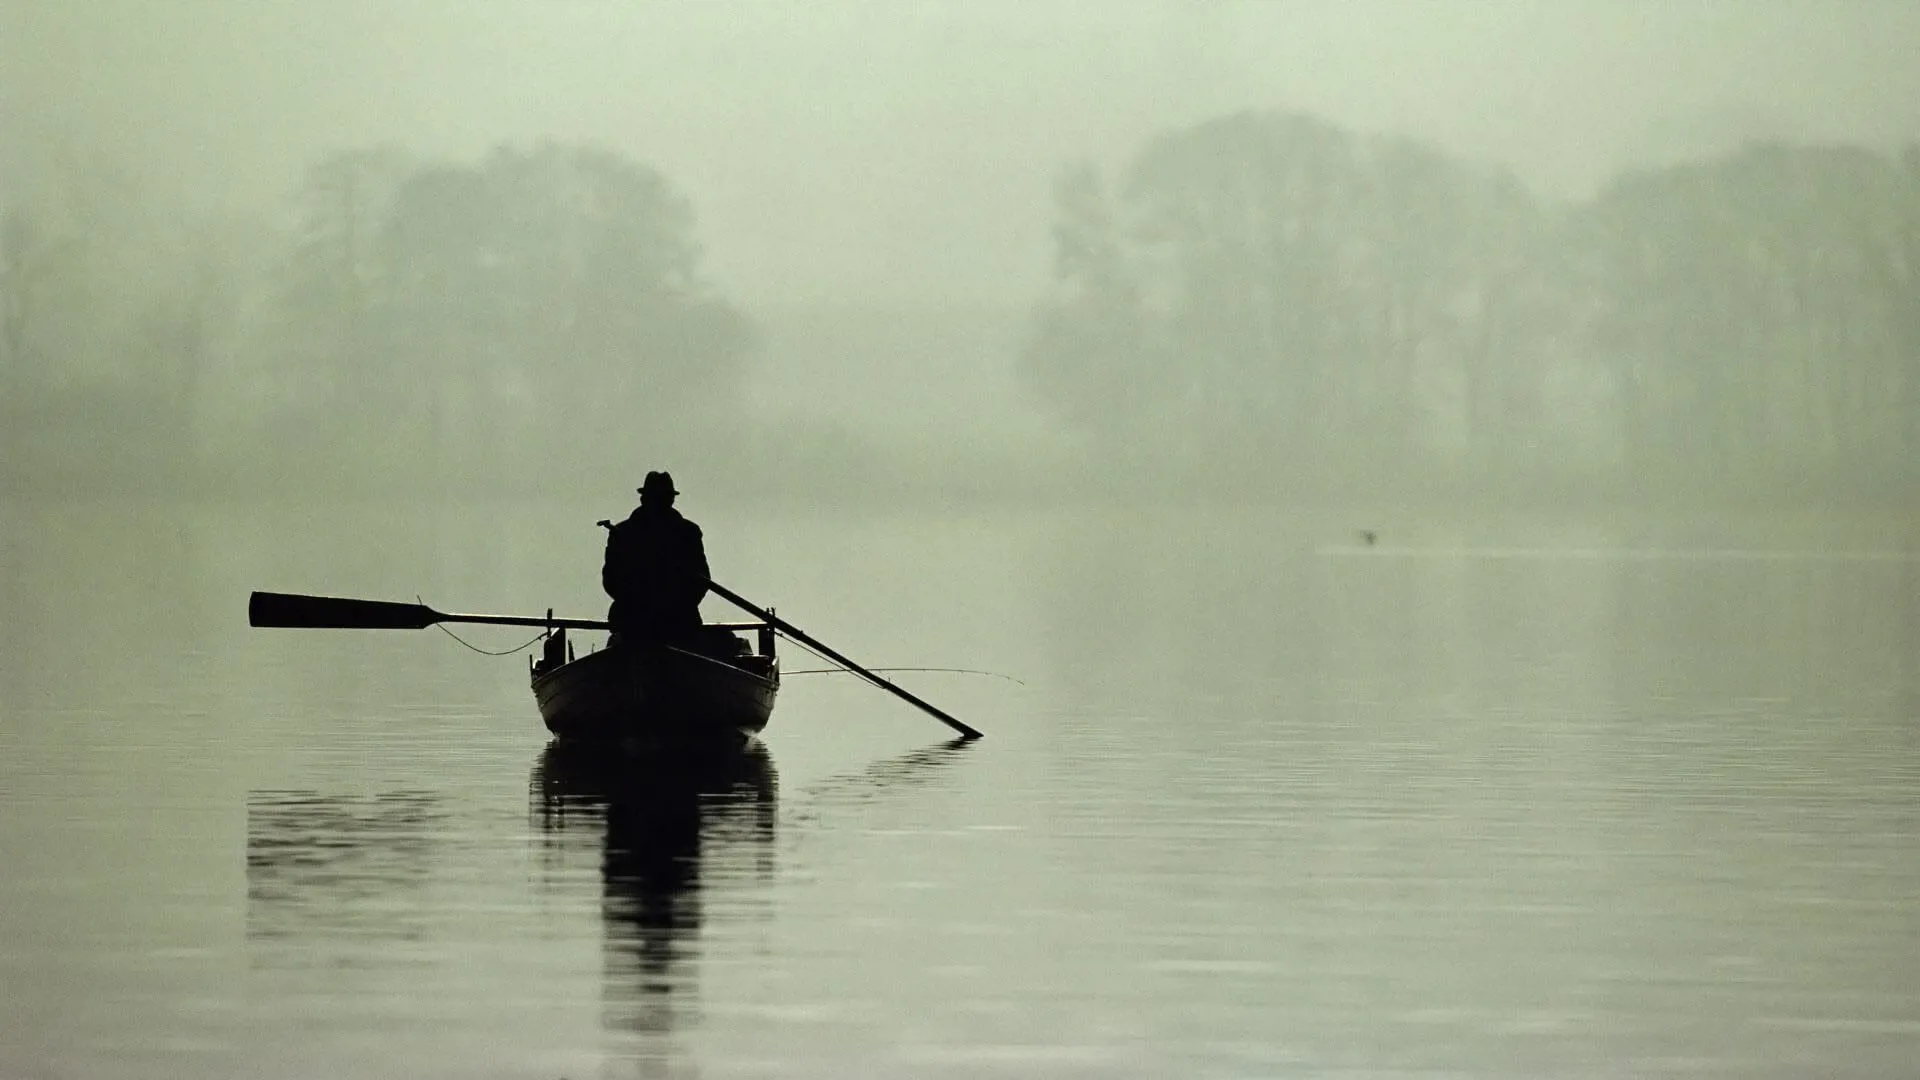 boat-river-fog-silhouette.jpg